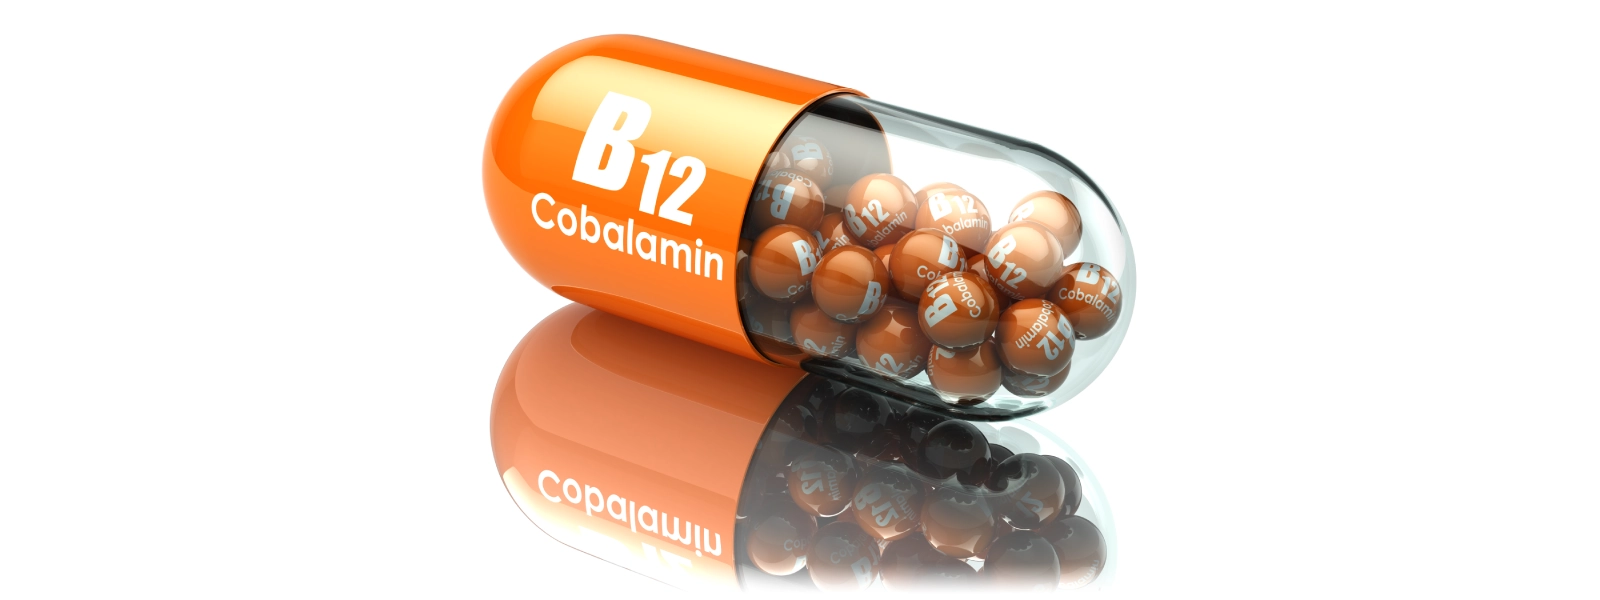 B12 Vitamini Hangi Besinlerde Bulunur?